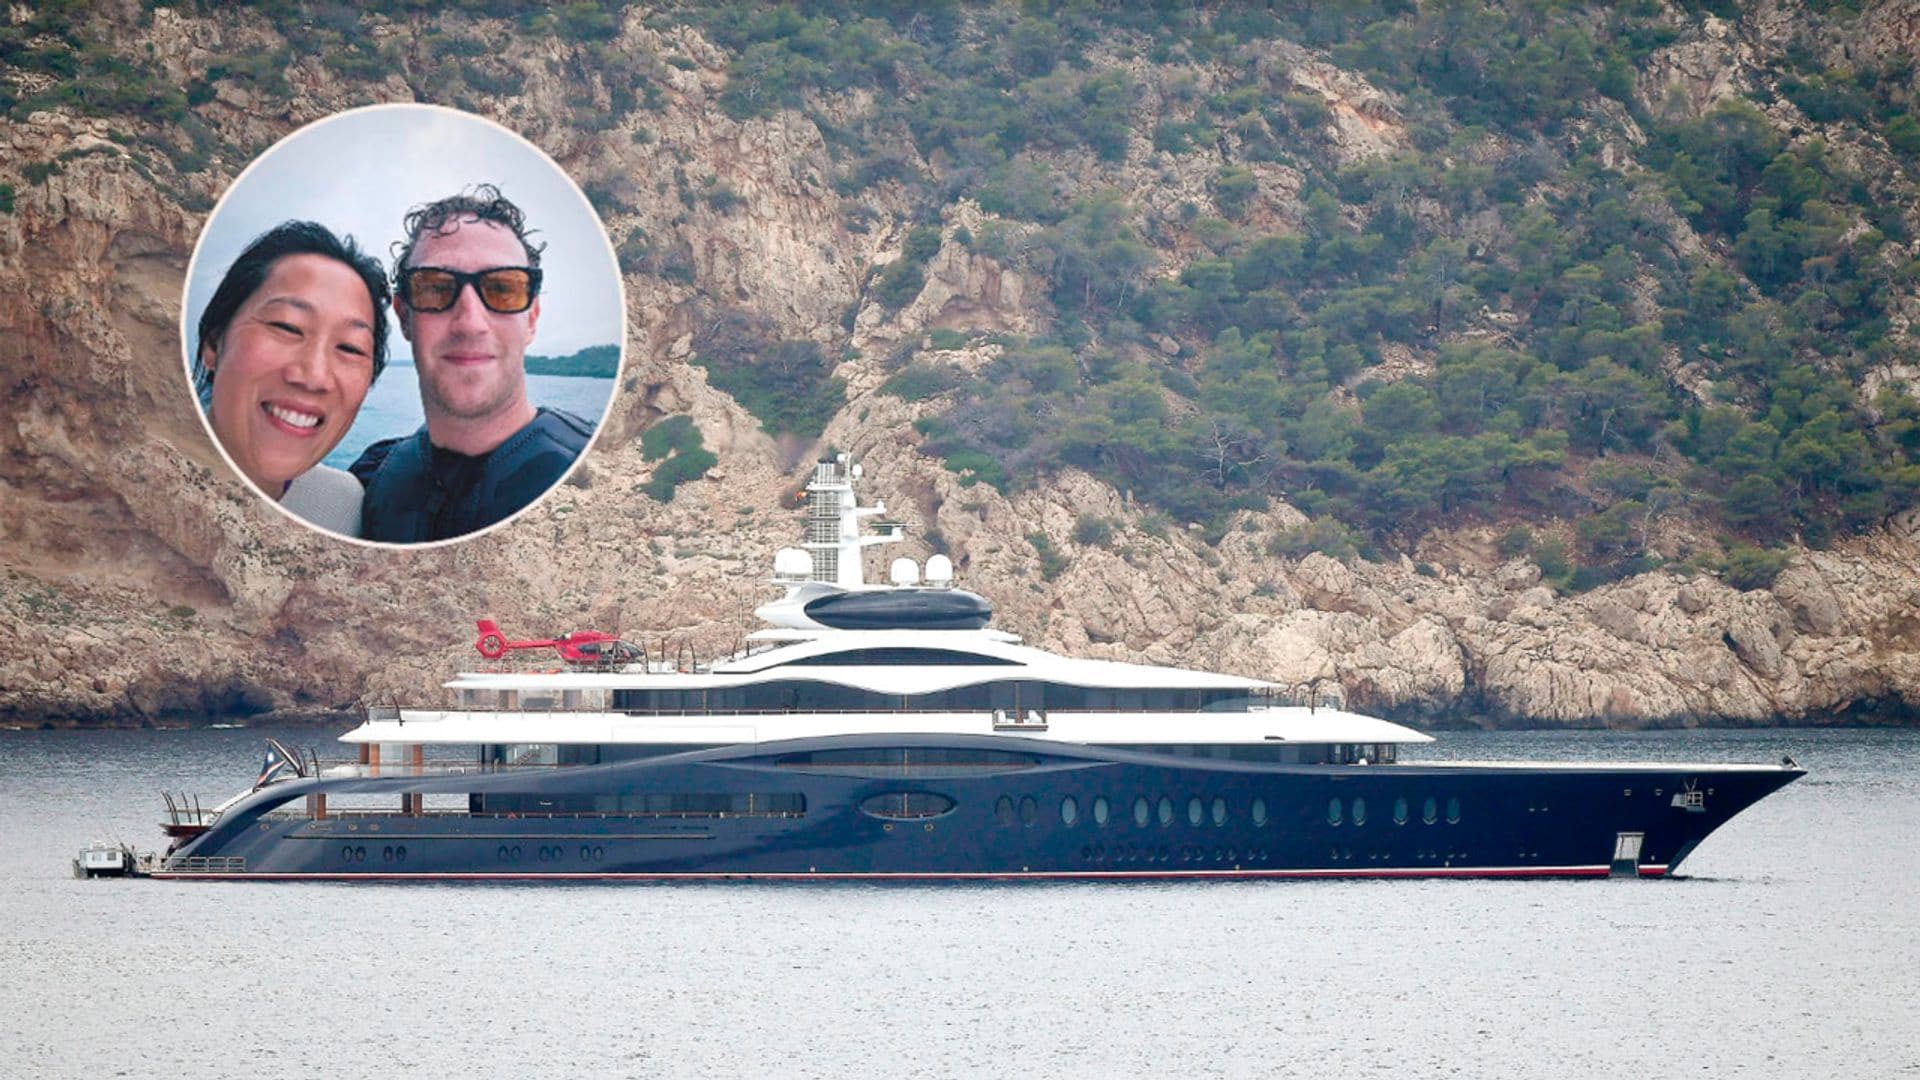 Así es el megayate de Mark Zuckerberg valorado en 300 millones de euros que navega por Mallorca